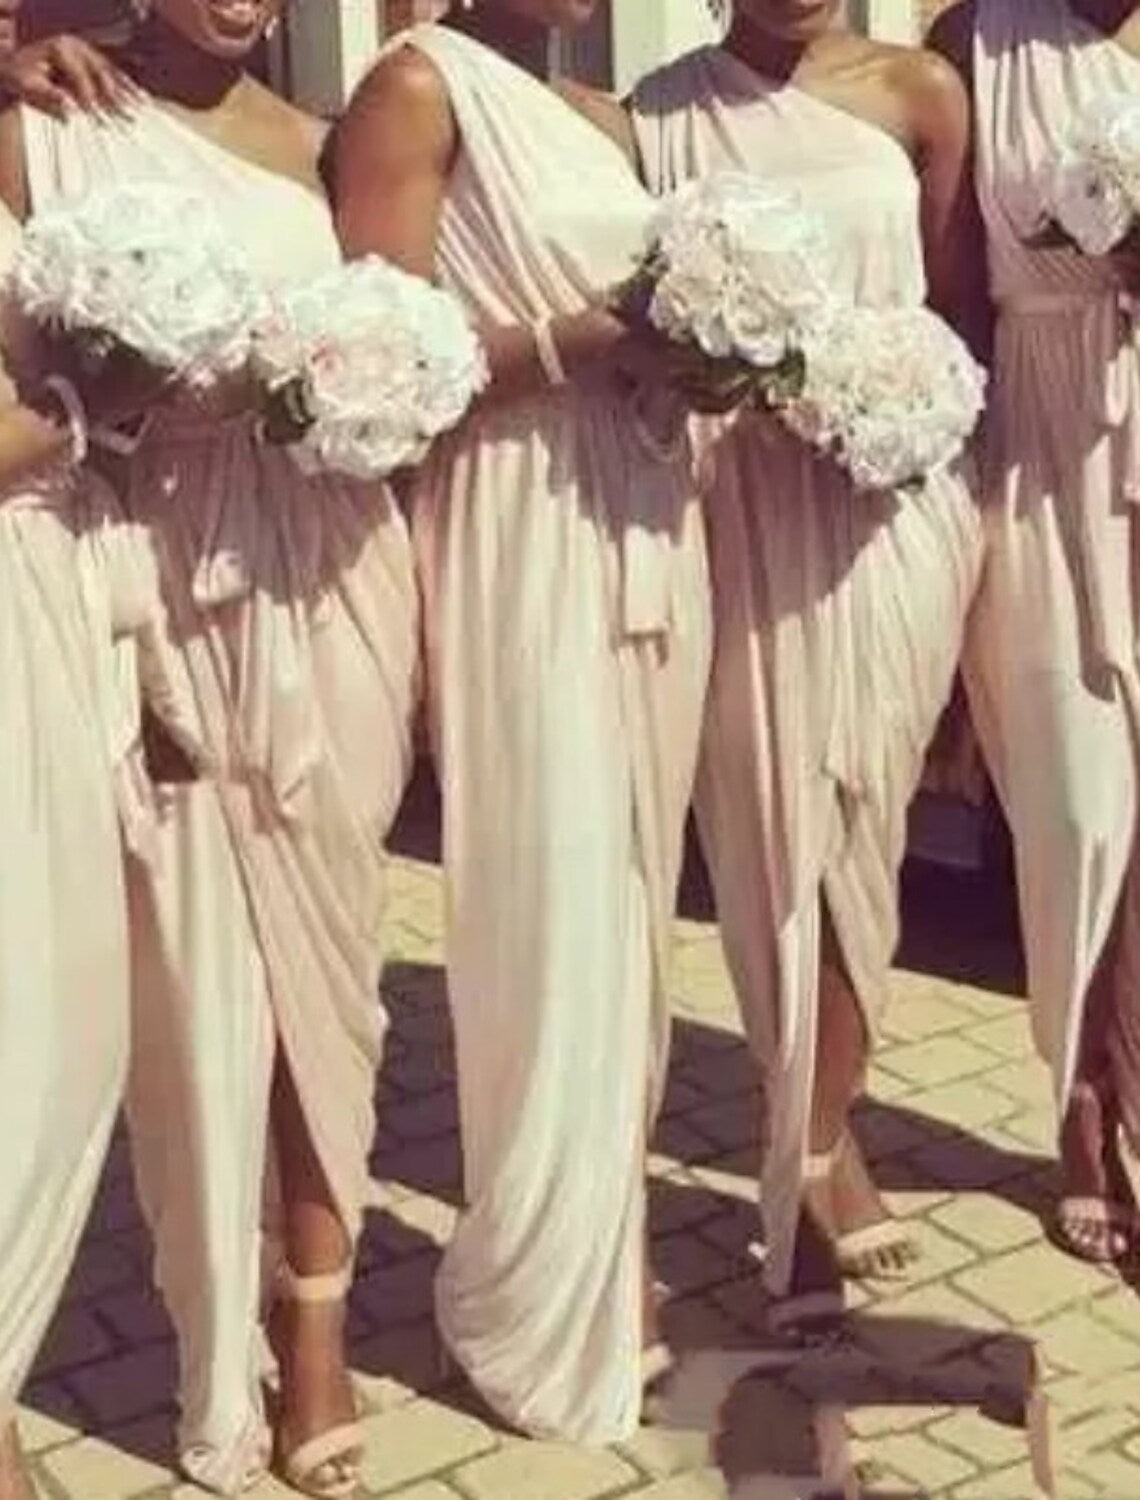 Sheath / Column Bridesmaid Dress V Neck Short Sleeve Elegant Ankle Length Spandex with Split Front / Solid Color